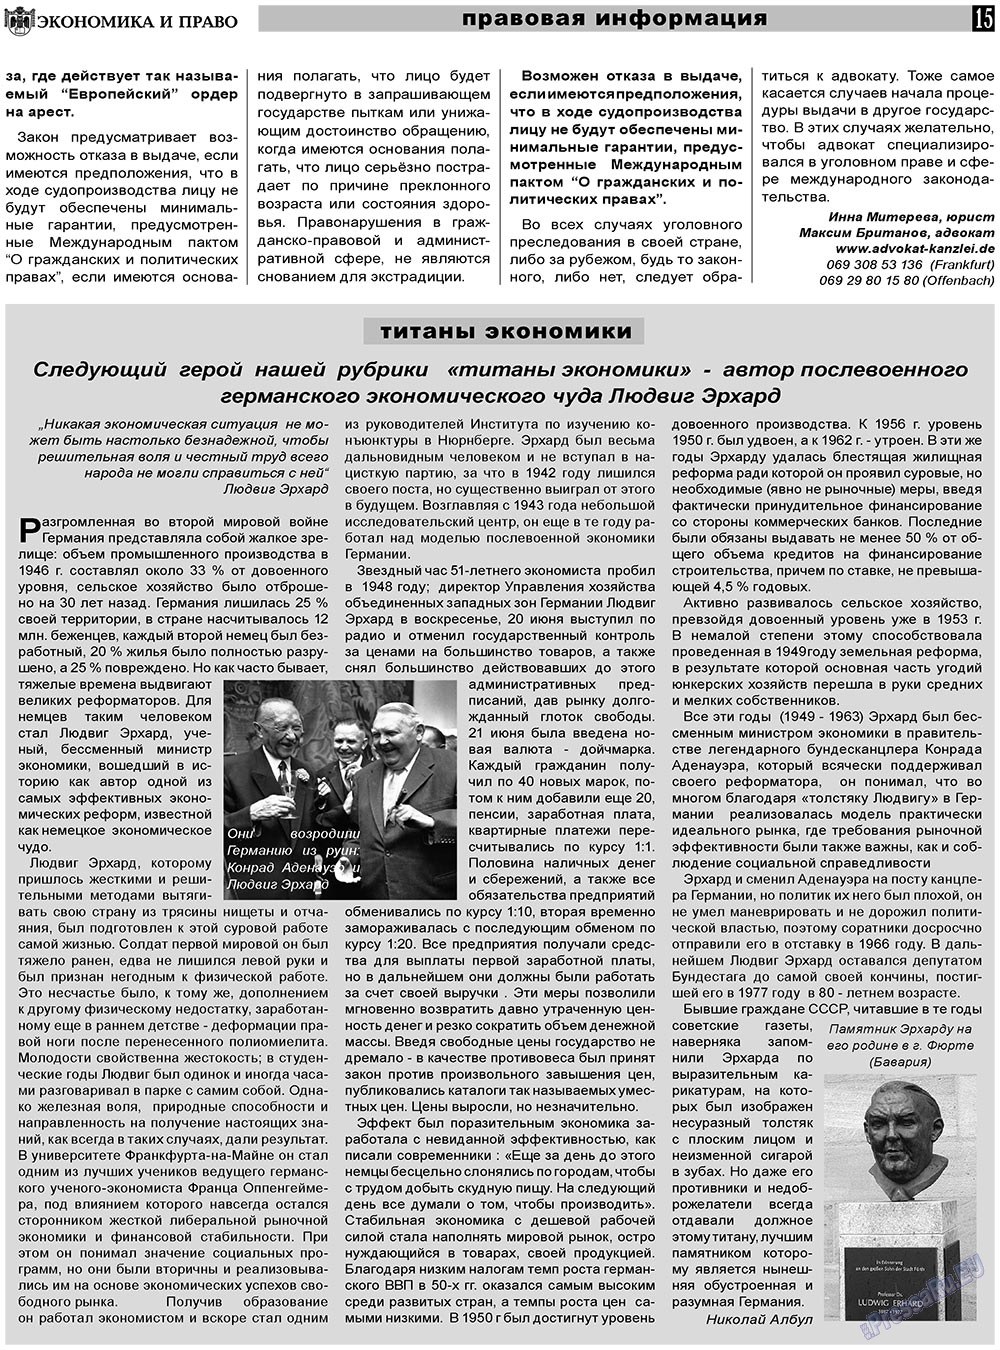 Экономика и право, газета. 2011 №6 стр.15